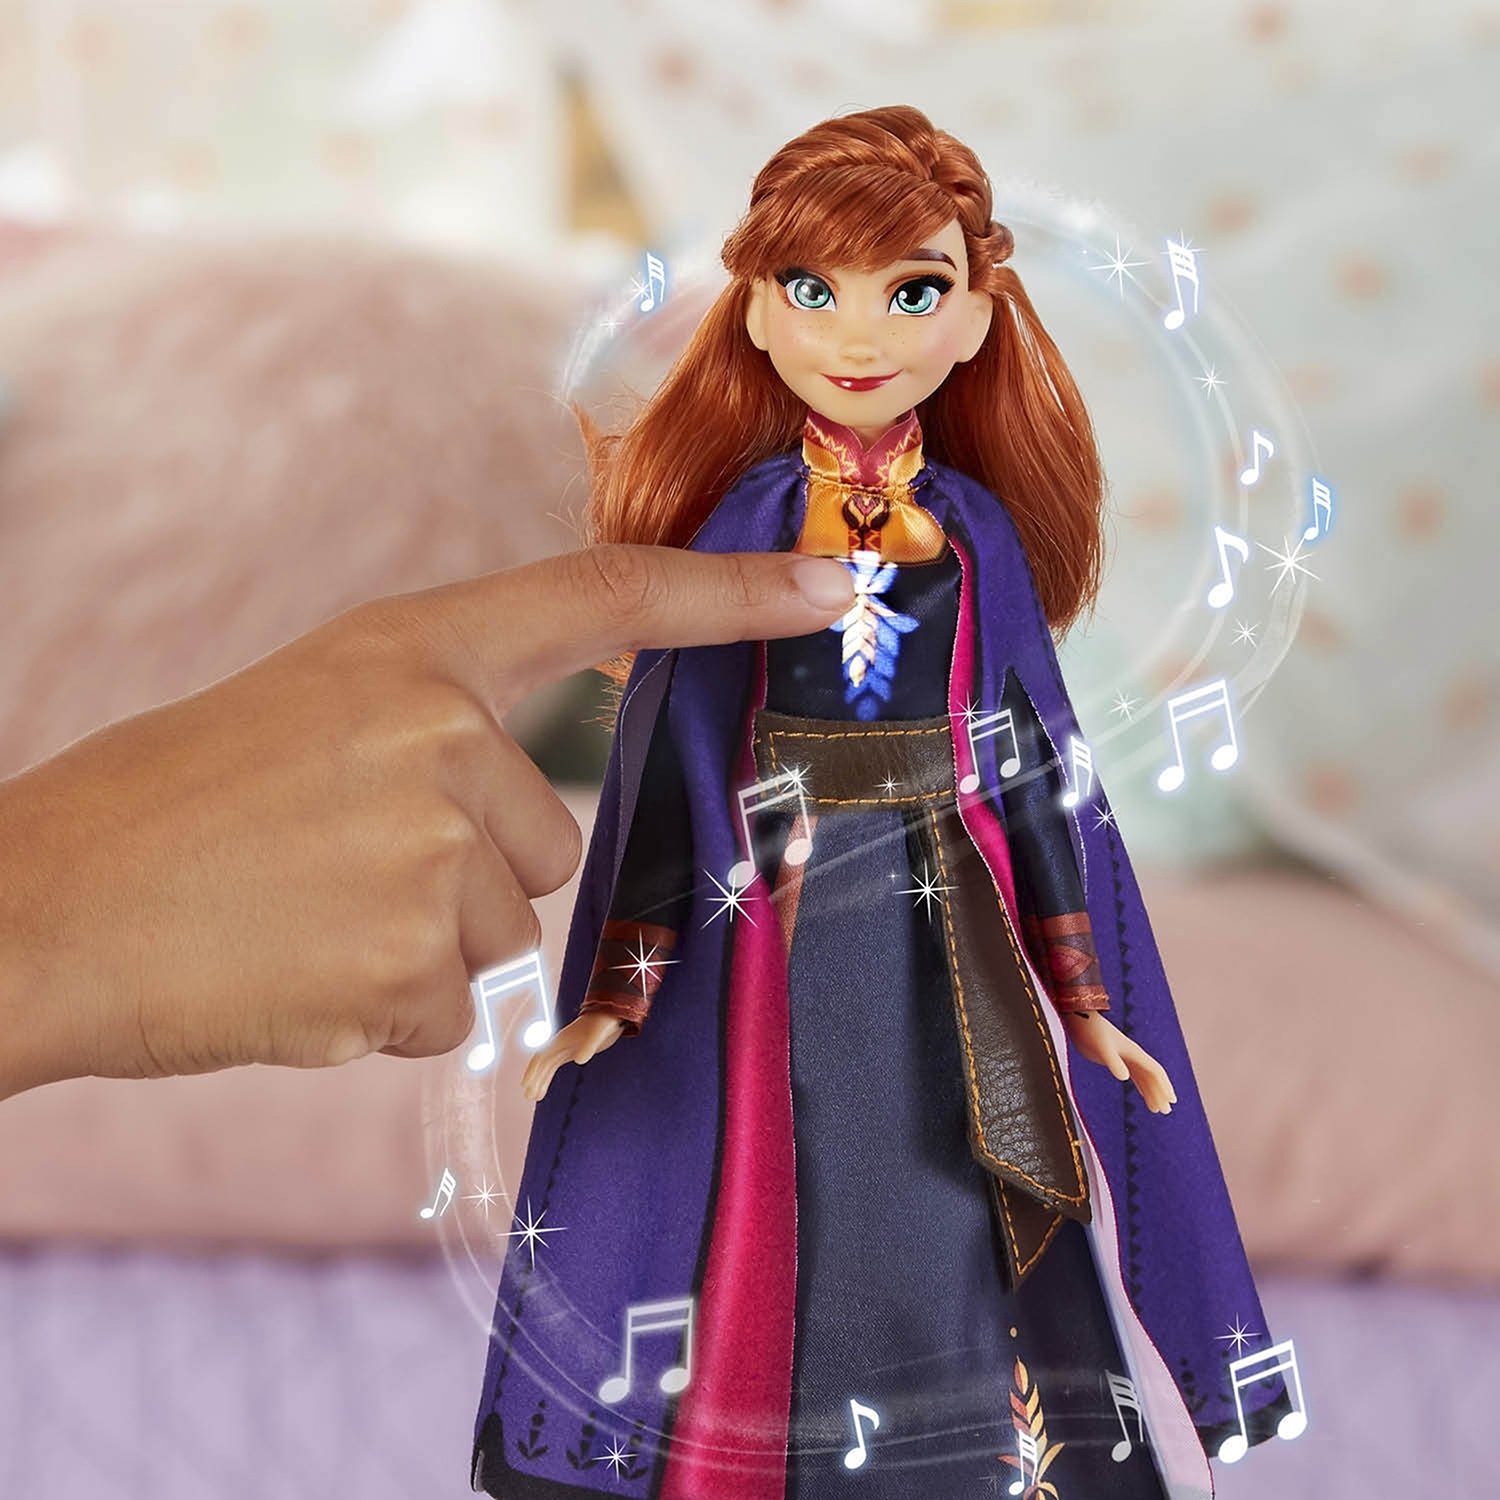 Интерактивная кукла Hasbro Disney Холодное сердце 2 Поющая Анна, E6853